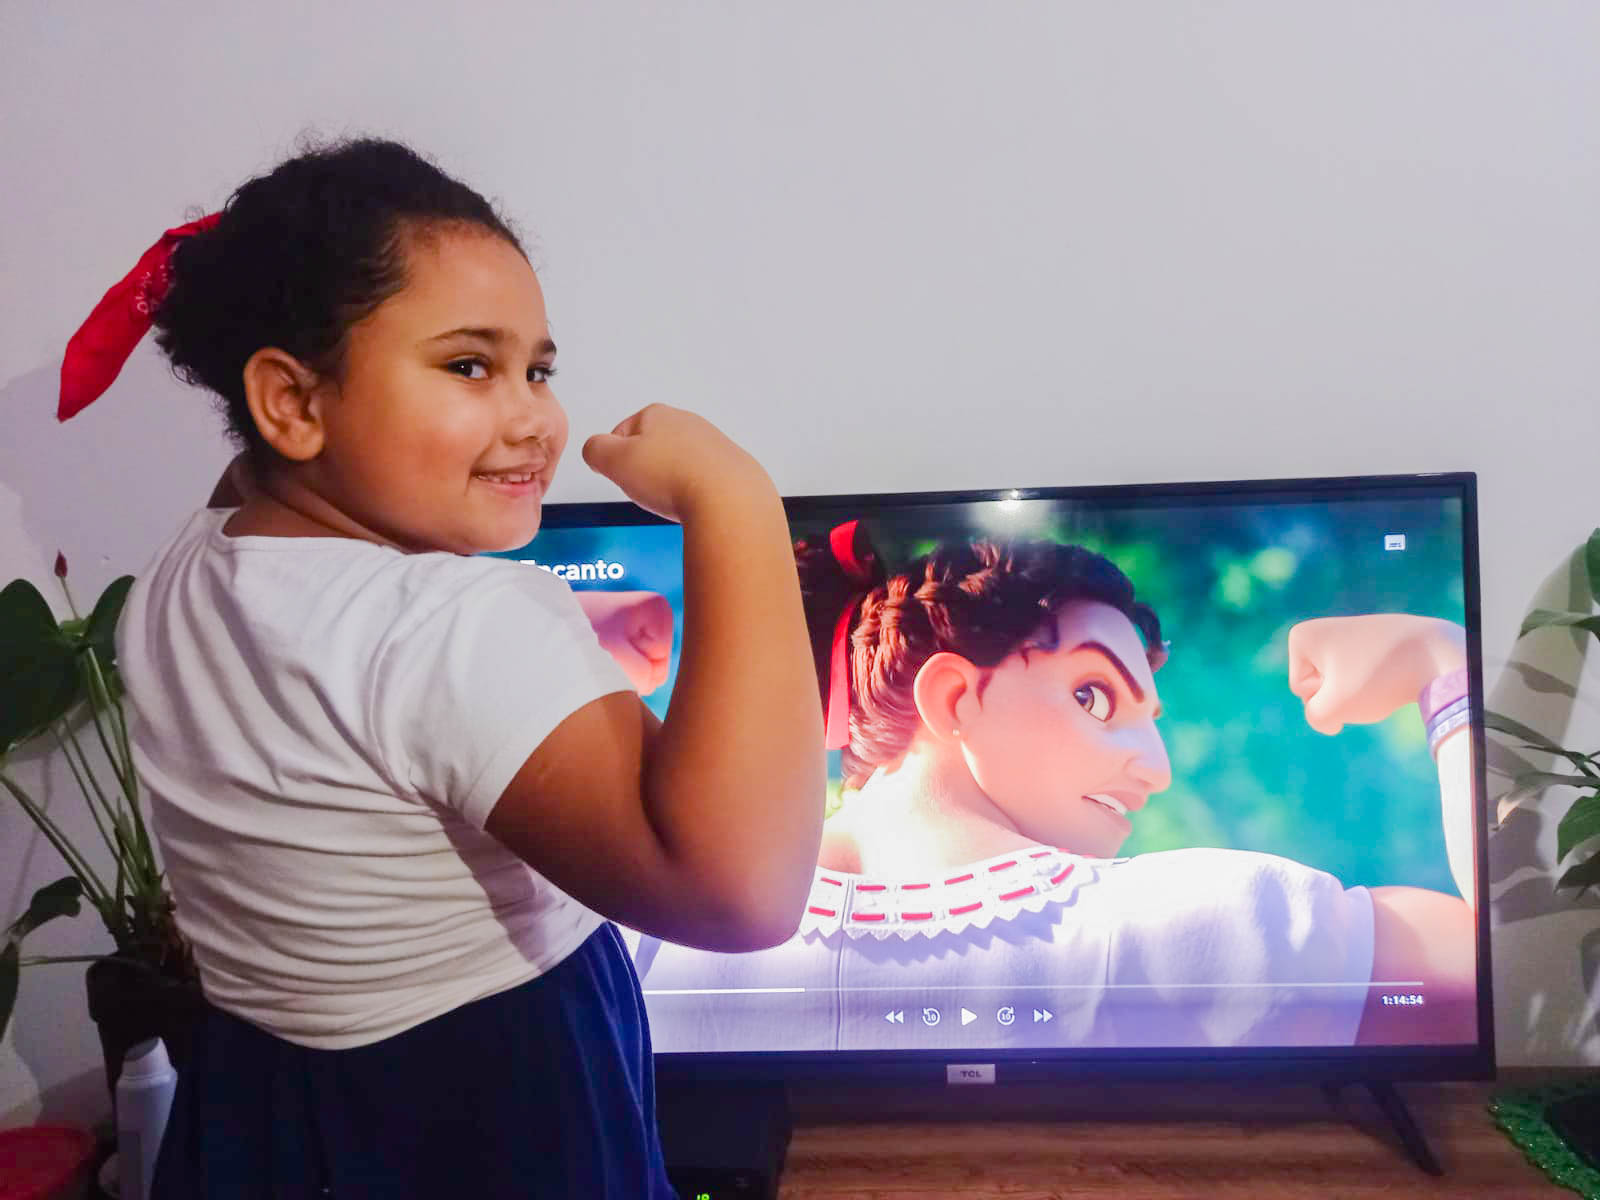 Uma menina de coque faz o mesmo gesto com o braço que a personagem Luisa, do filme "Encanto", que está na tela da televisão